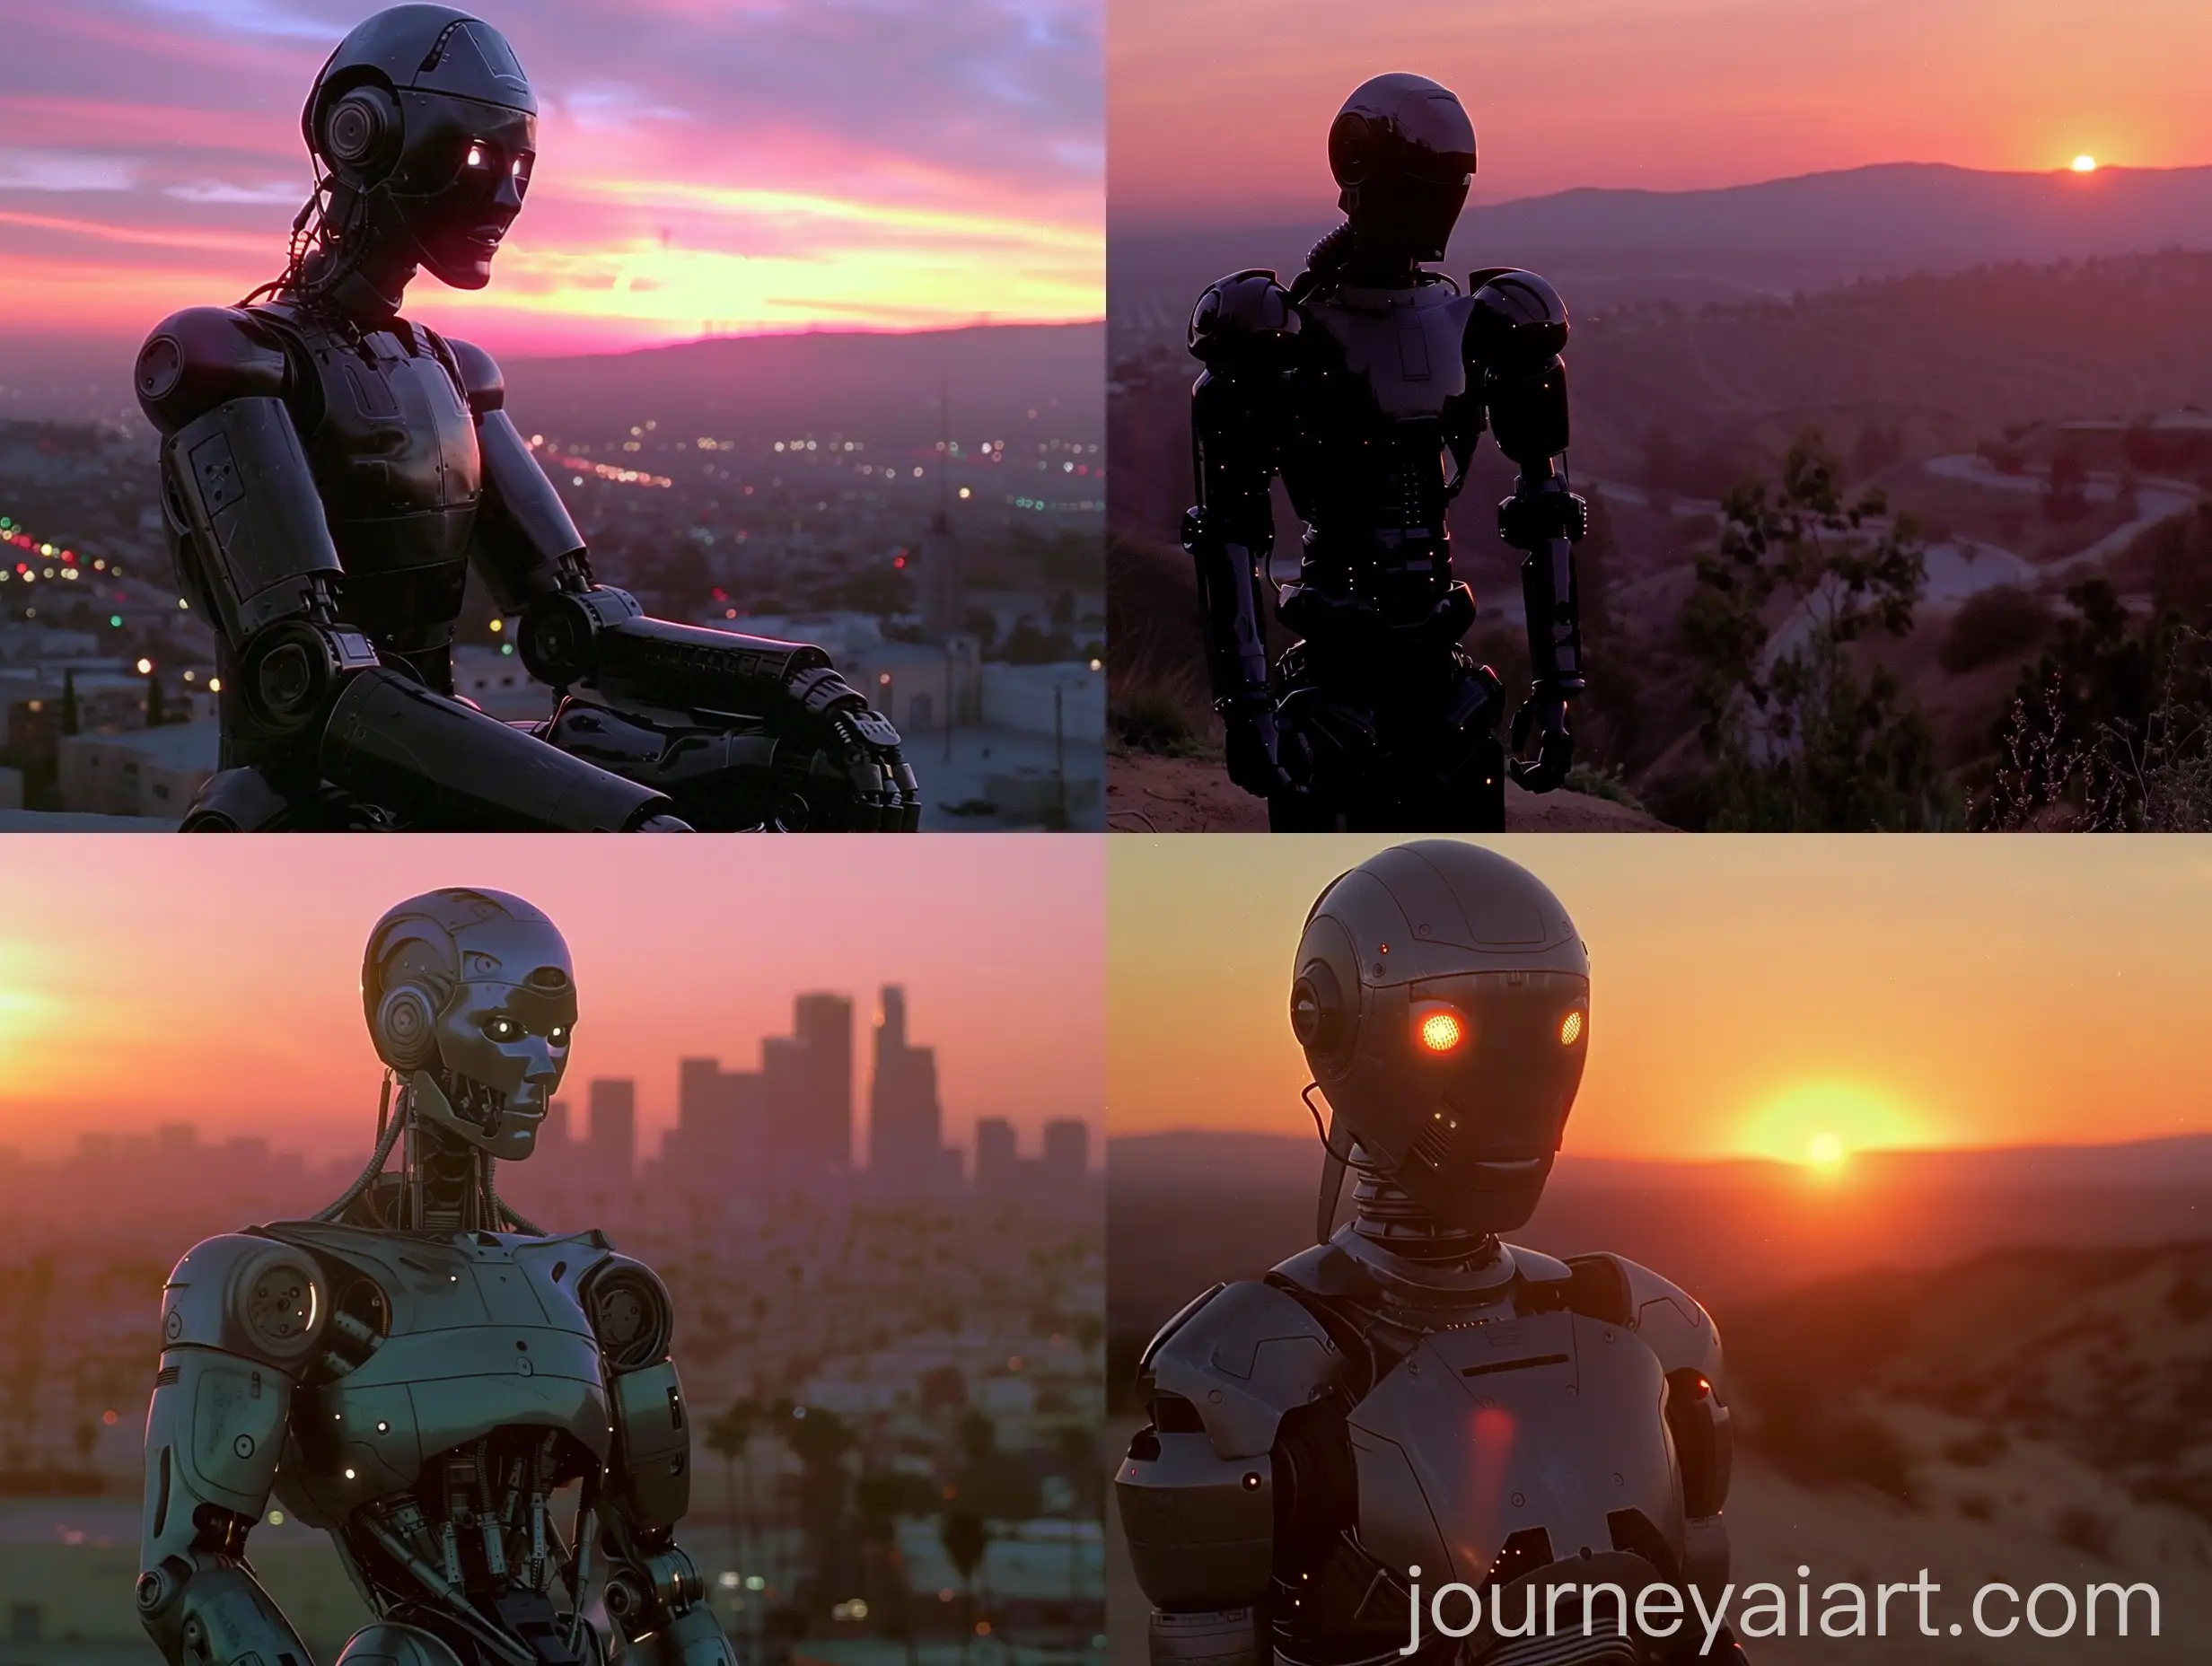 Android-in-Retro-Futuristic-Sunset-Scene